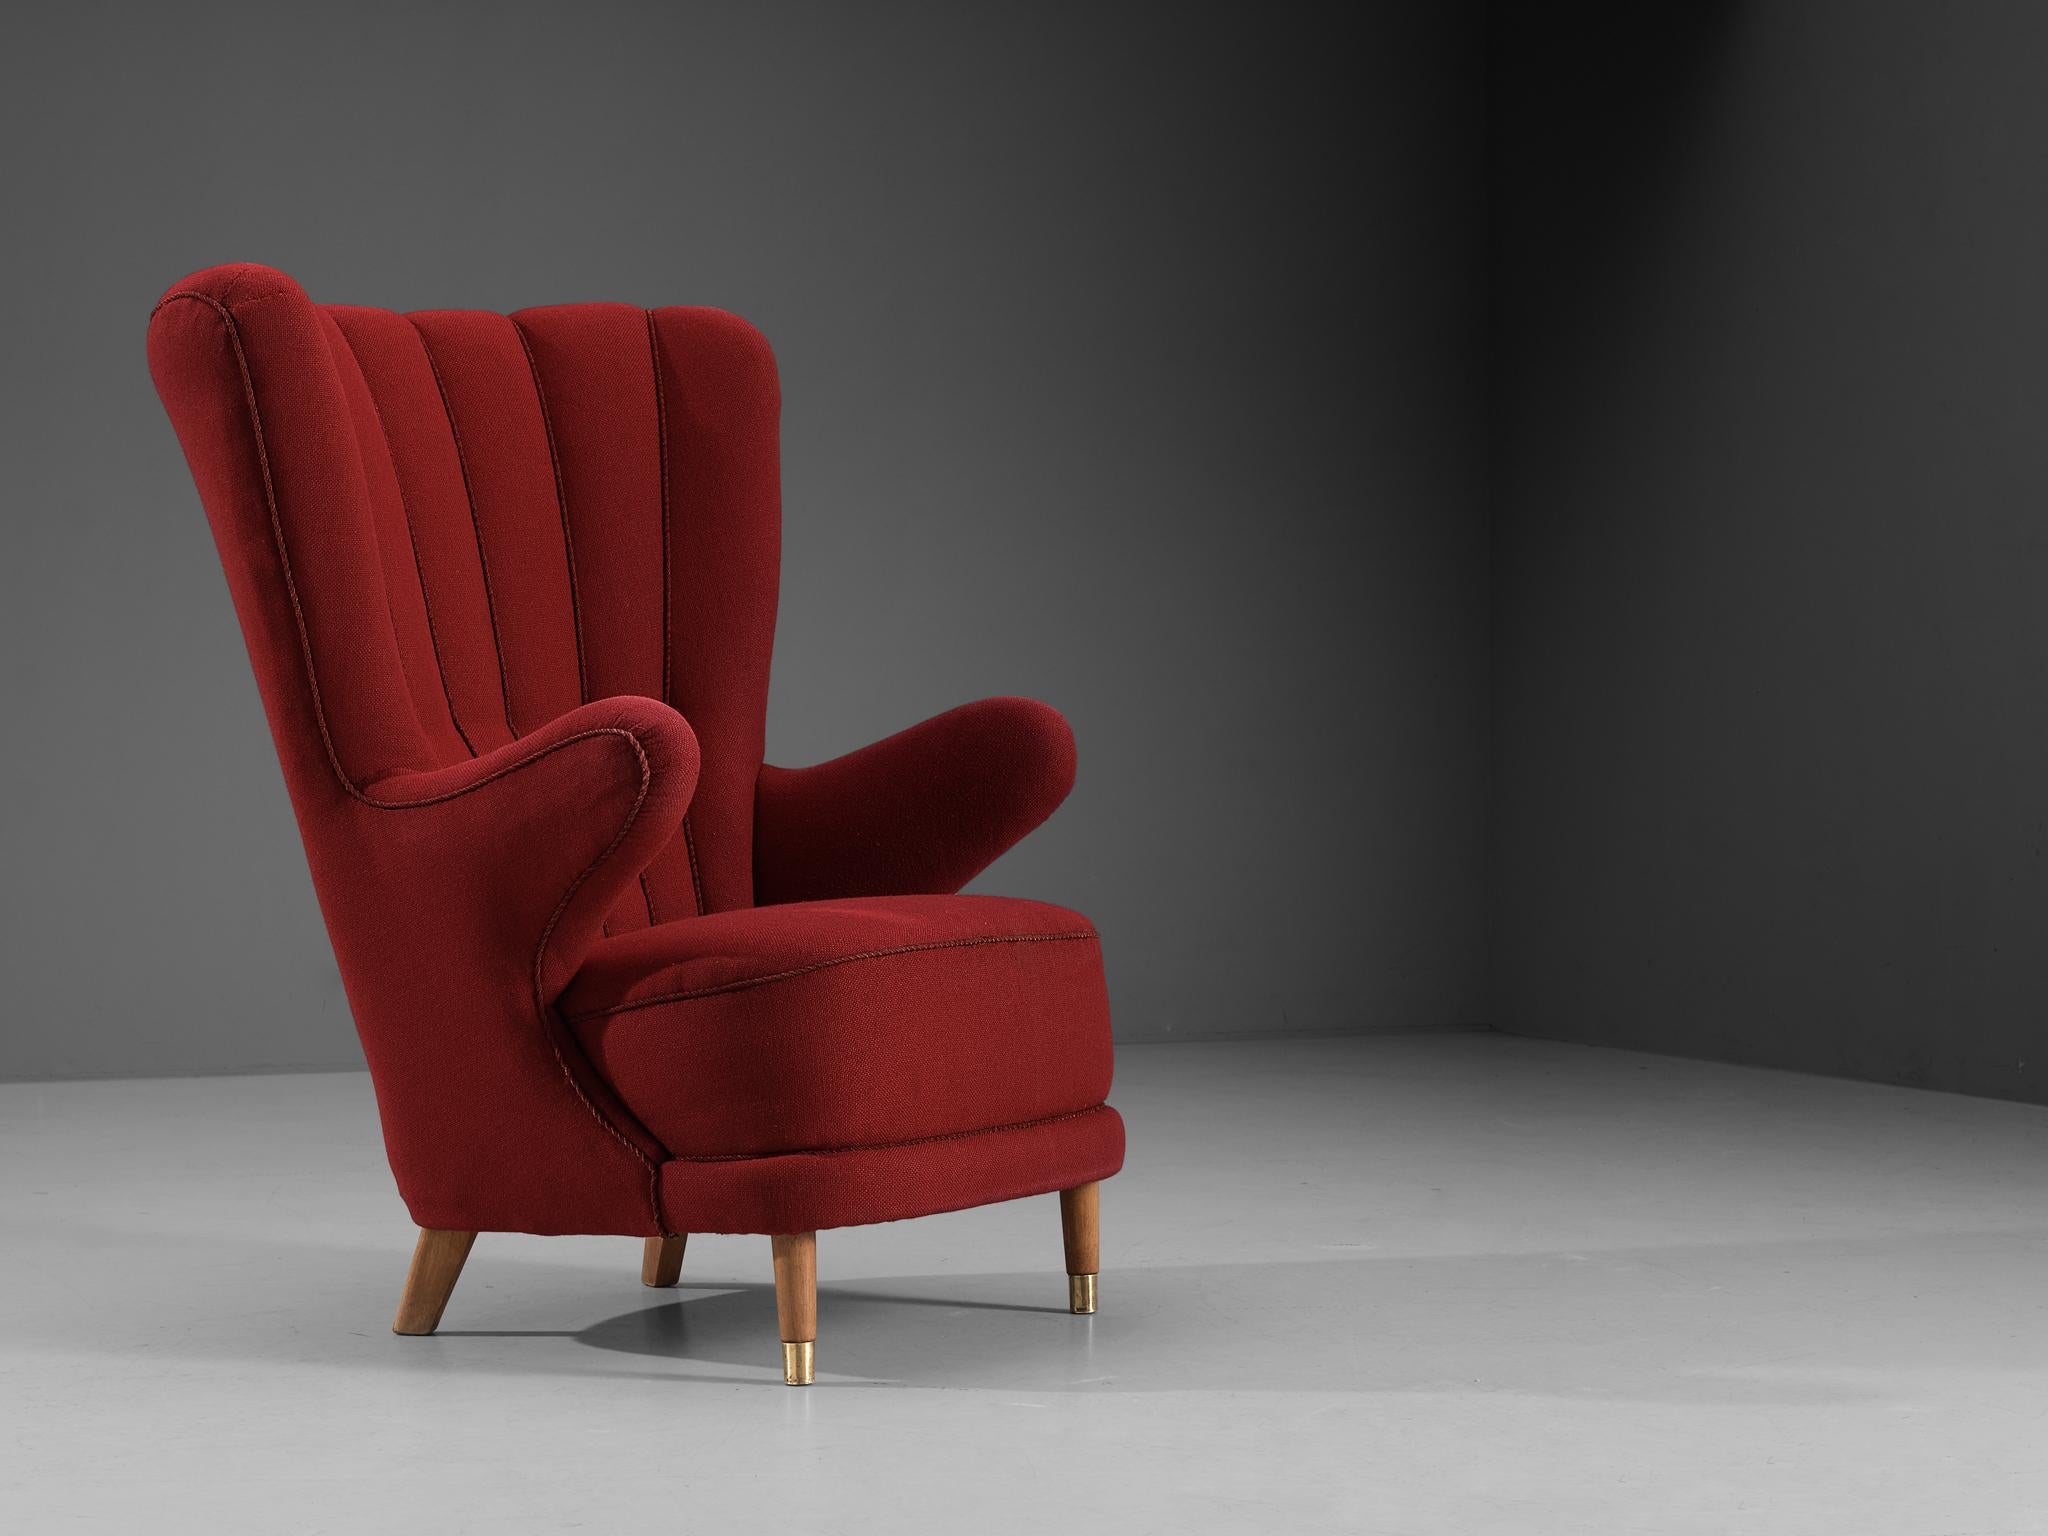 Schiller Polstermøbler, Loungesessel, Stoff, Buche, Messing, Dänemark, um. 1950 

Dieser formschöne Sessel wurde 1954 auf der Möbelmesse des Herstellerverbandes in Fredericia vorgestellt. Das Design basiert auf einer soliden Konstruktion mit feinen